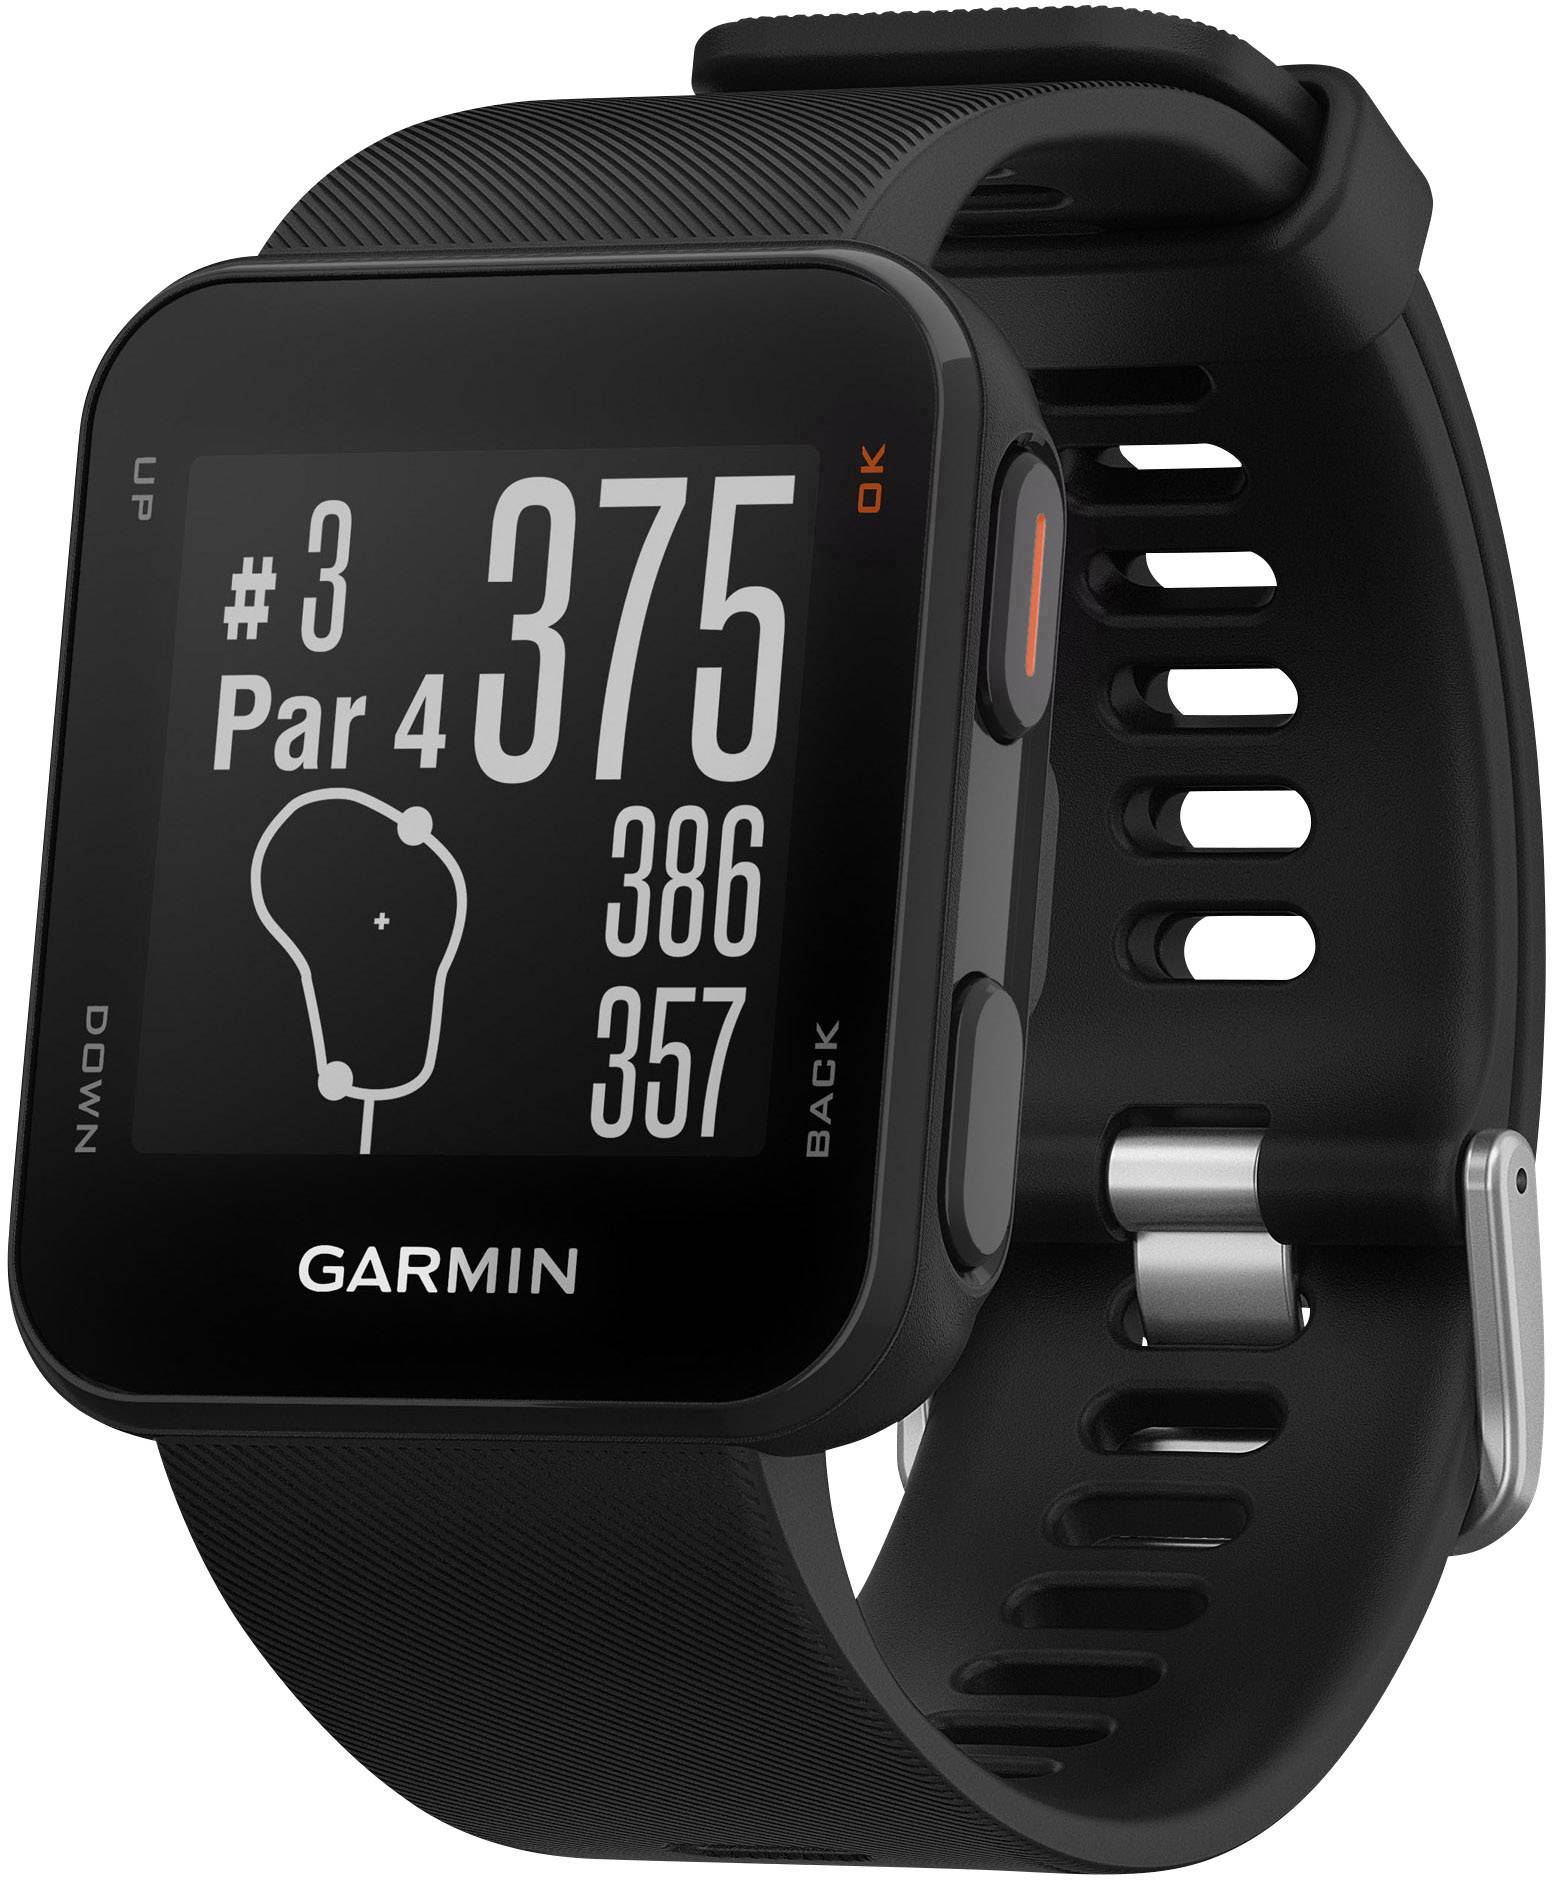 Garmin часы модели. Смарт часы Гармин. Часы для гольфа Garmin. Golf watch Garmin. Часы Гармин унисекс.